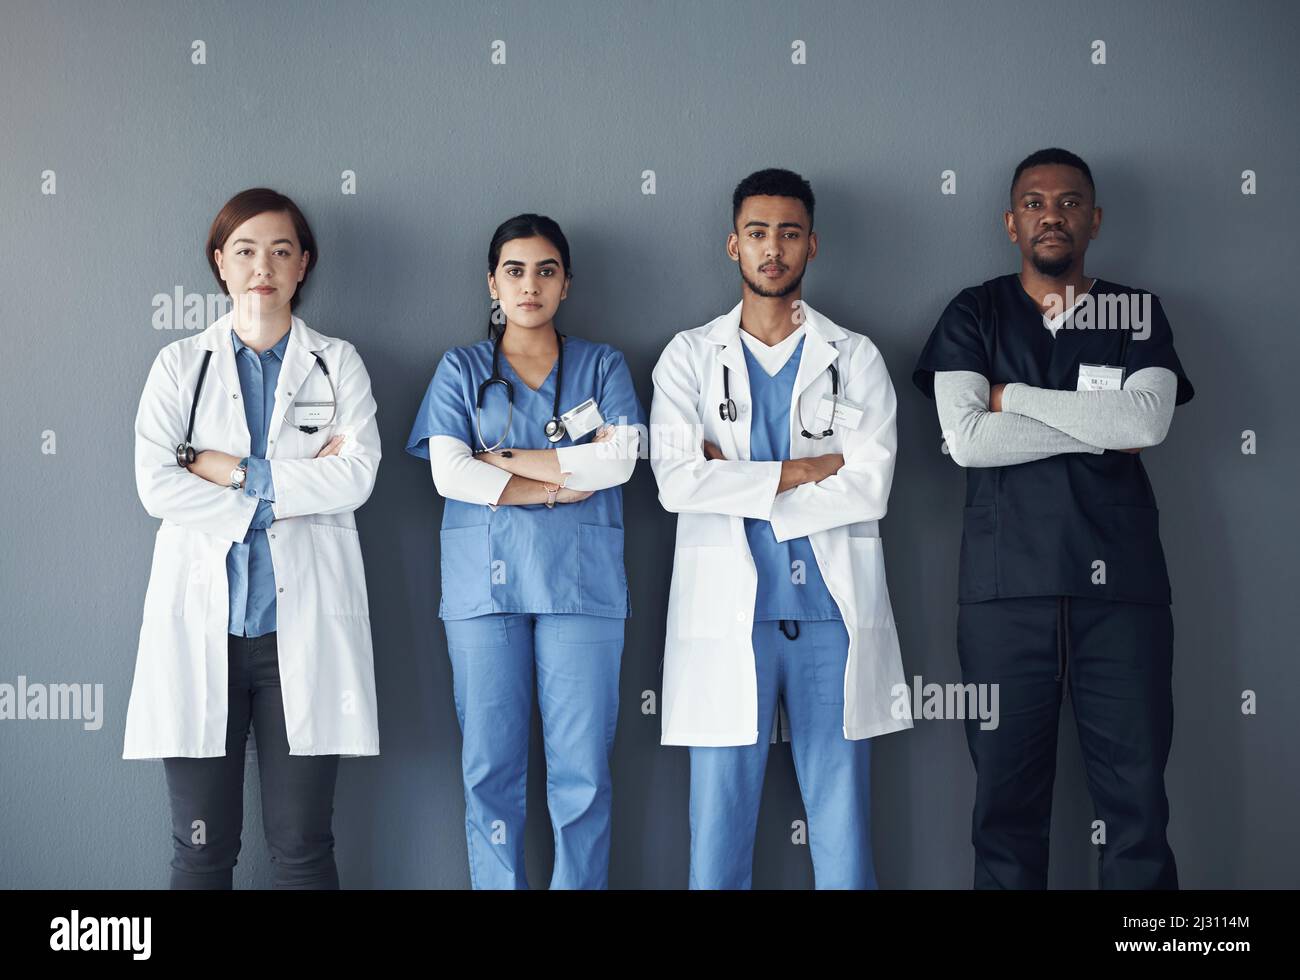 Als Pflegekraft erleben Sie jeden Tag selbstlose Handlungen. Aufnahme einer Gruppe von Ärzten, die bei der Arbeit vor einem grauen Hintergrund stehen. Stockfoto